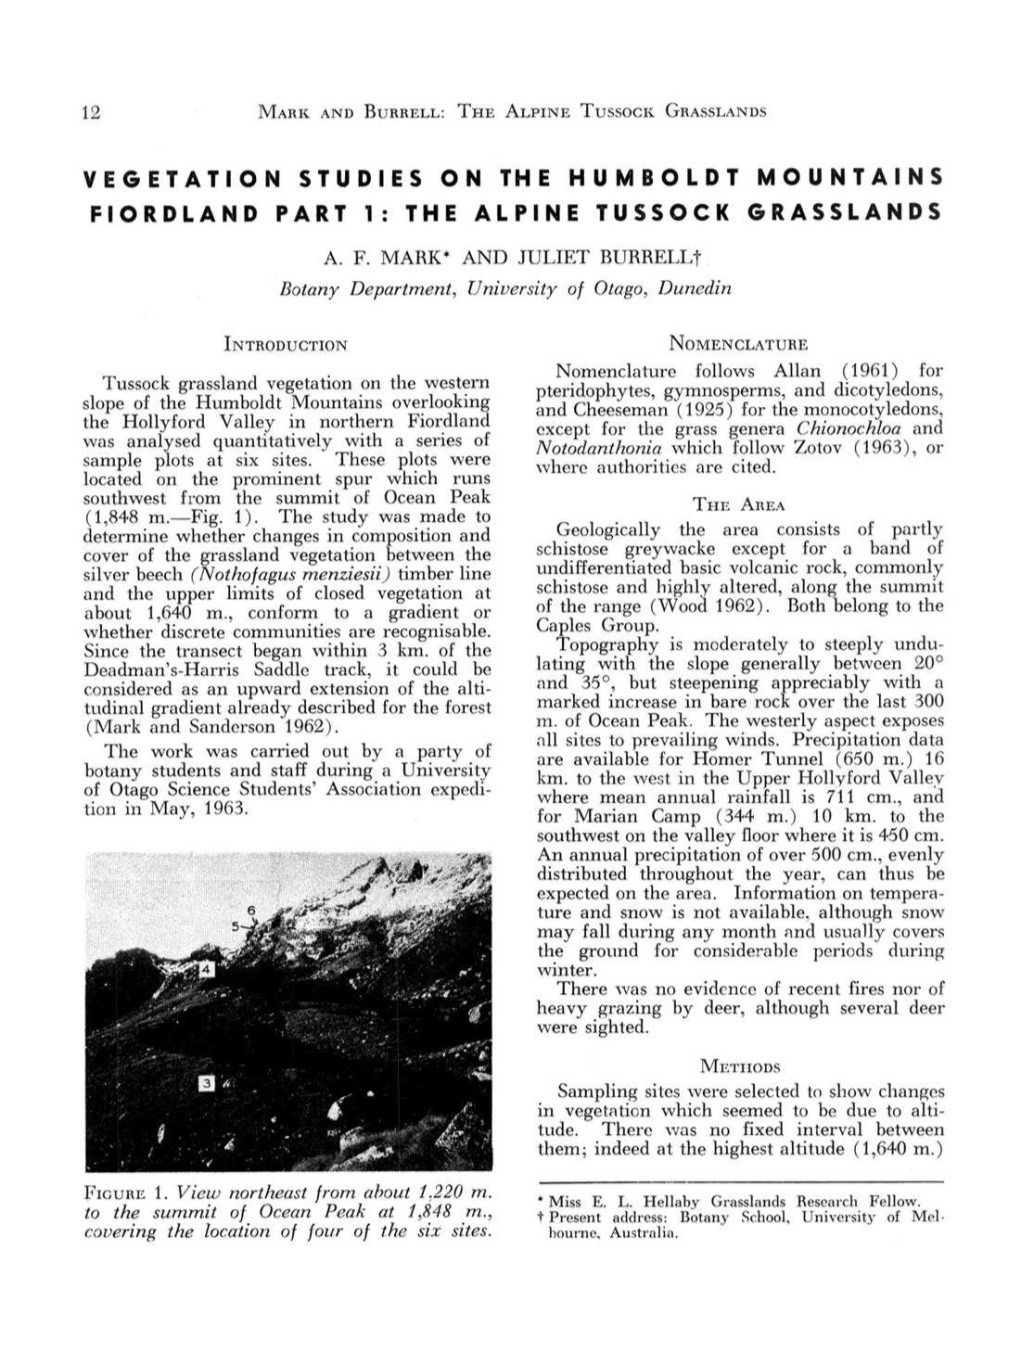 The Alpine Tussock Grasslands